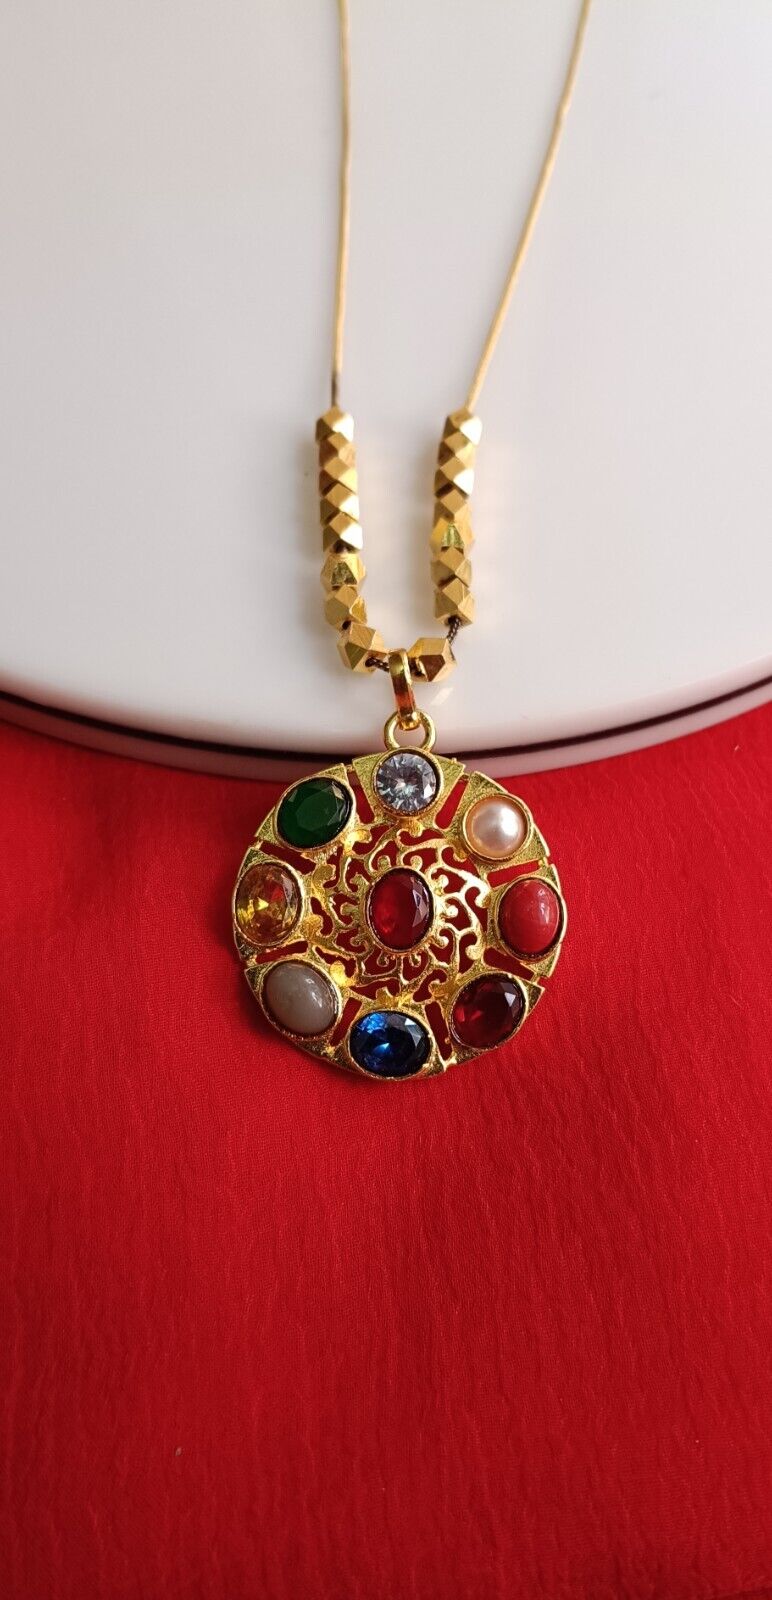 100% Original Navgrah/Navratan/Navratna Gold Plated Locket/Pendant With Chain